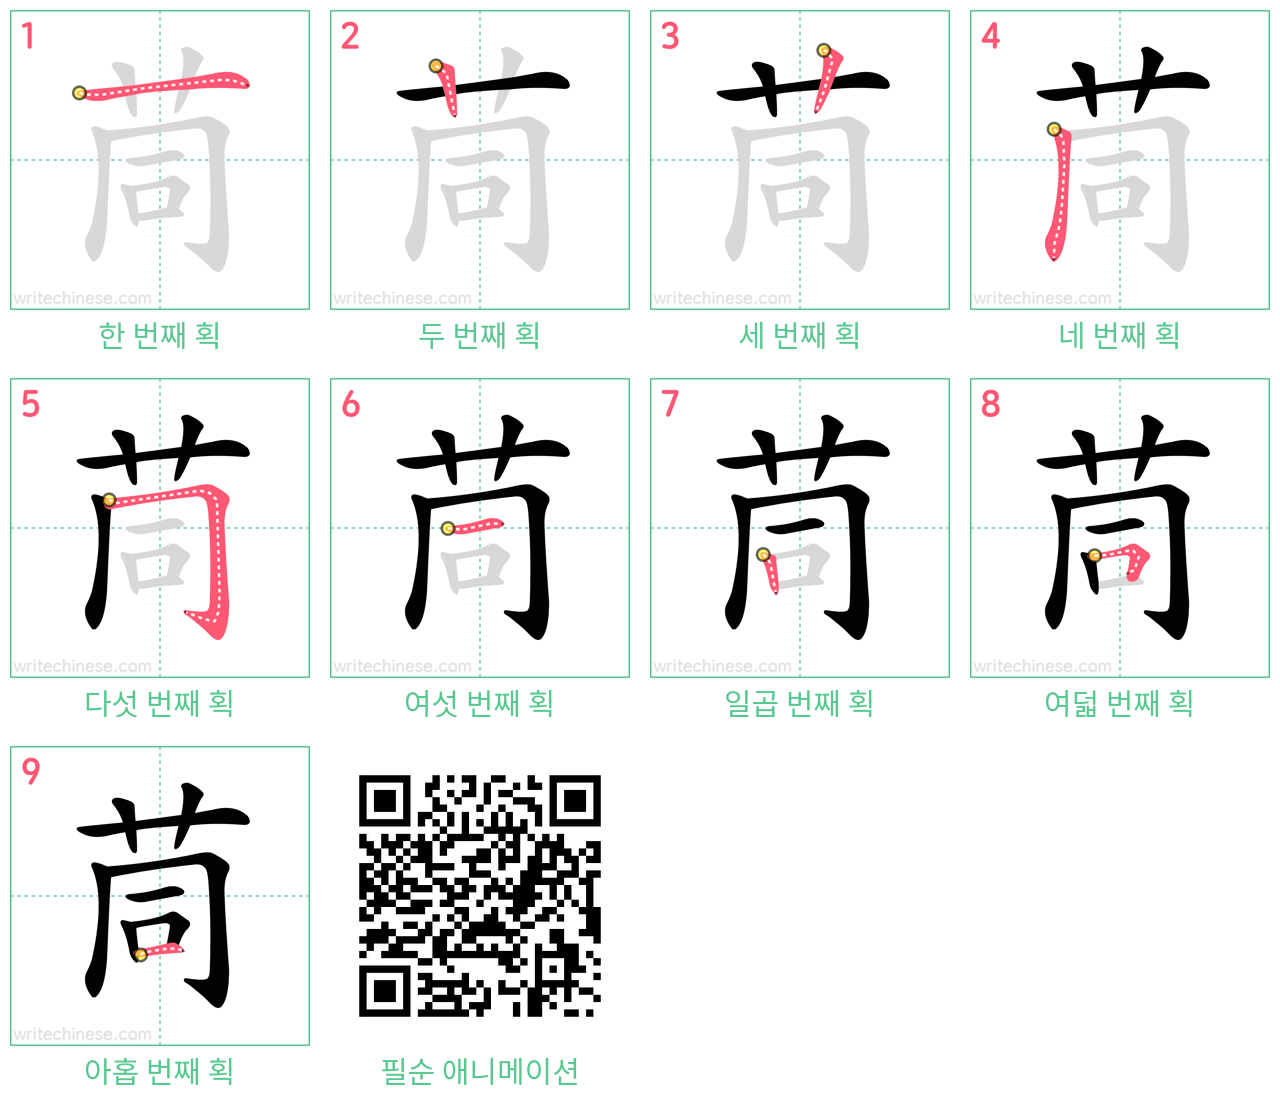 茼 step-by-step stroke order diagrams